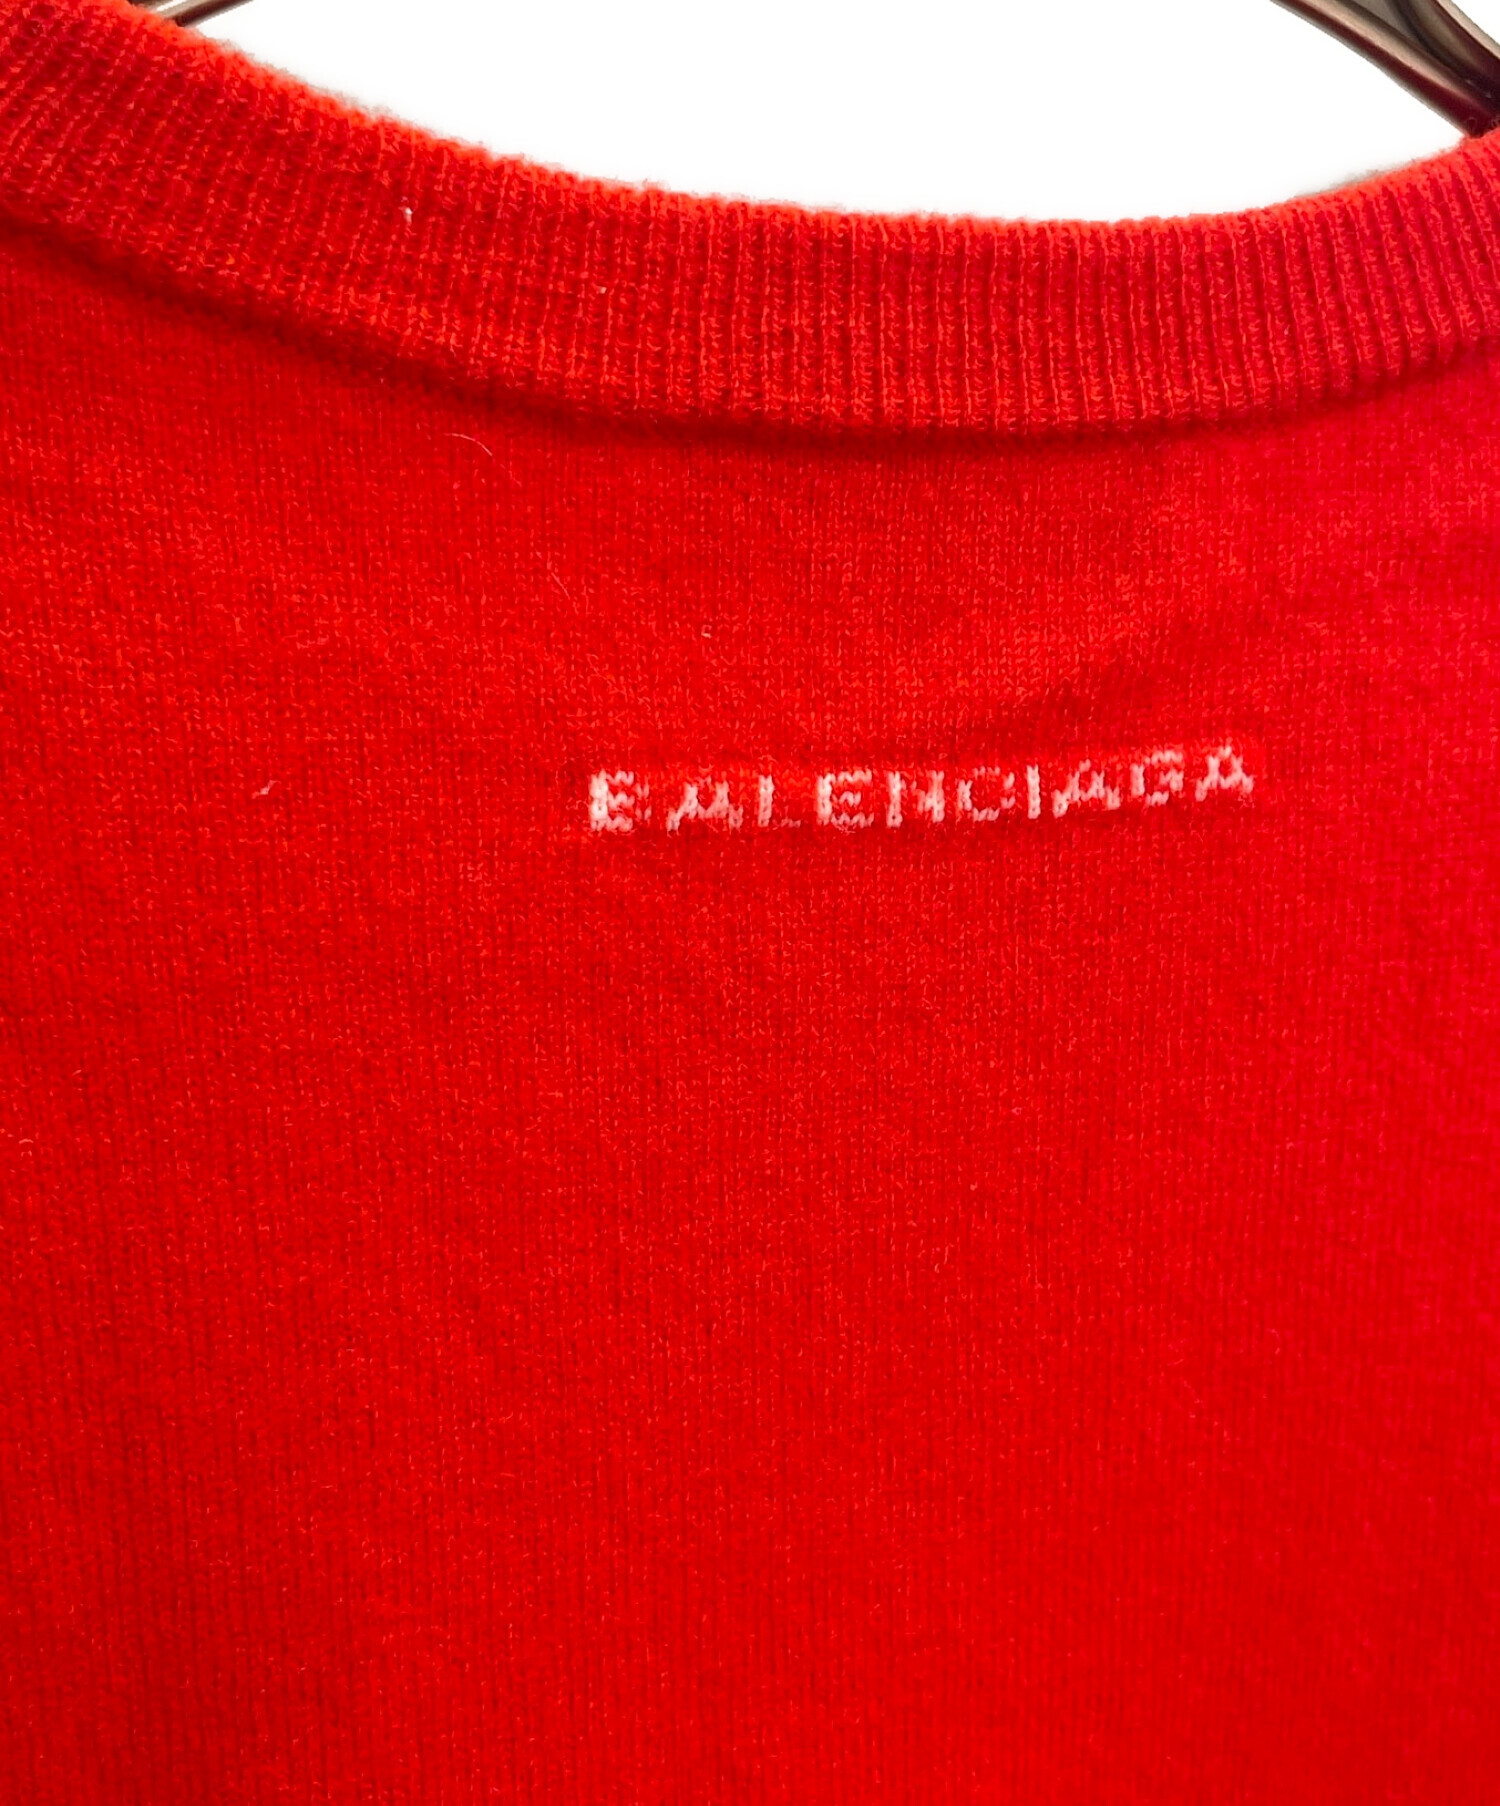 中古・古着通販】BALENCIAGA (バレンシアガ) Logo Crewneck Sweater